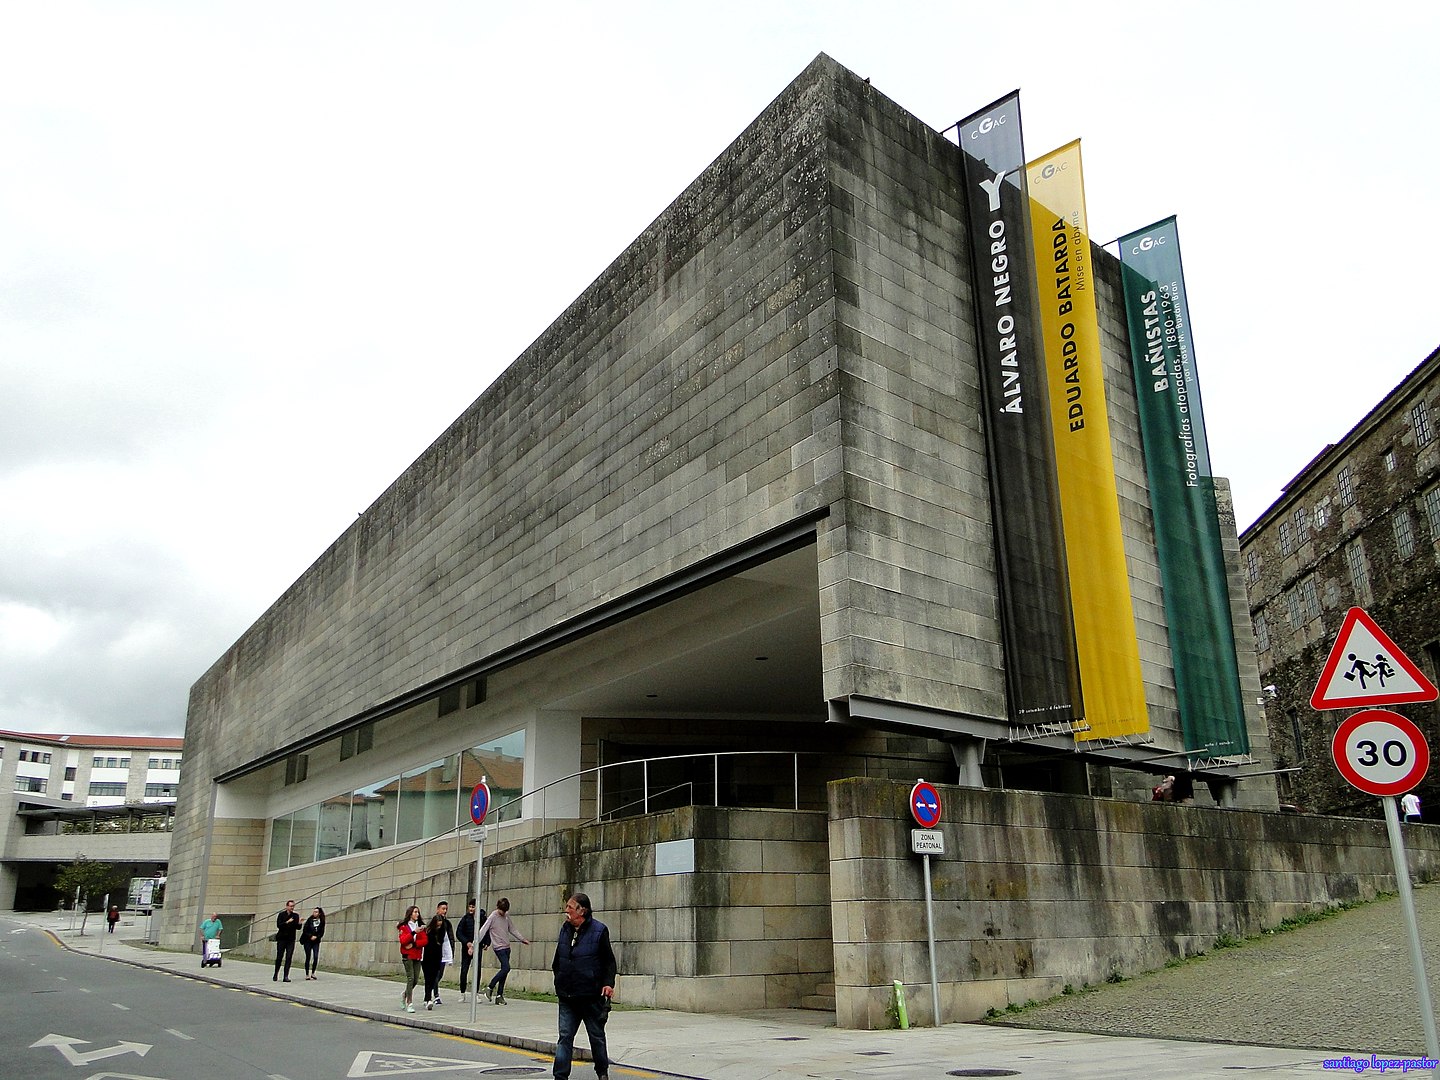 Na Espanha, Álvaro Siza é reconhecido por ter projetado o Centro Galego de Arte Contemporânea